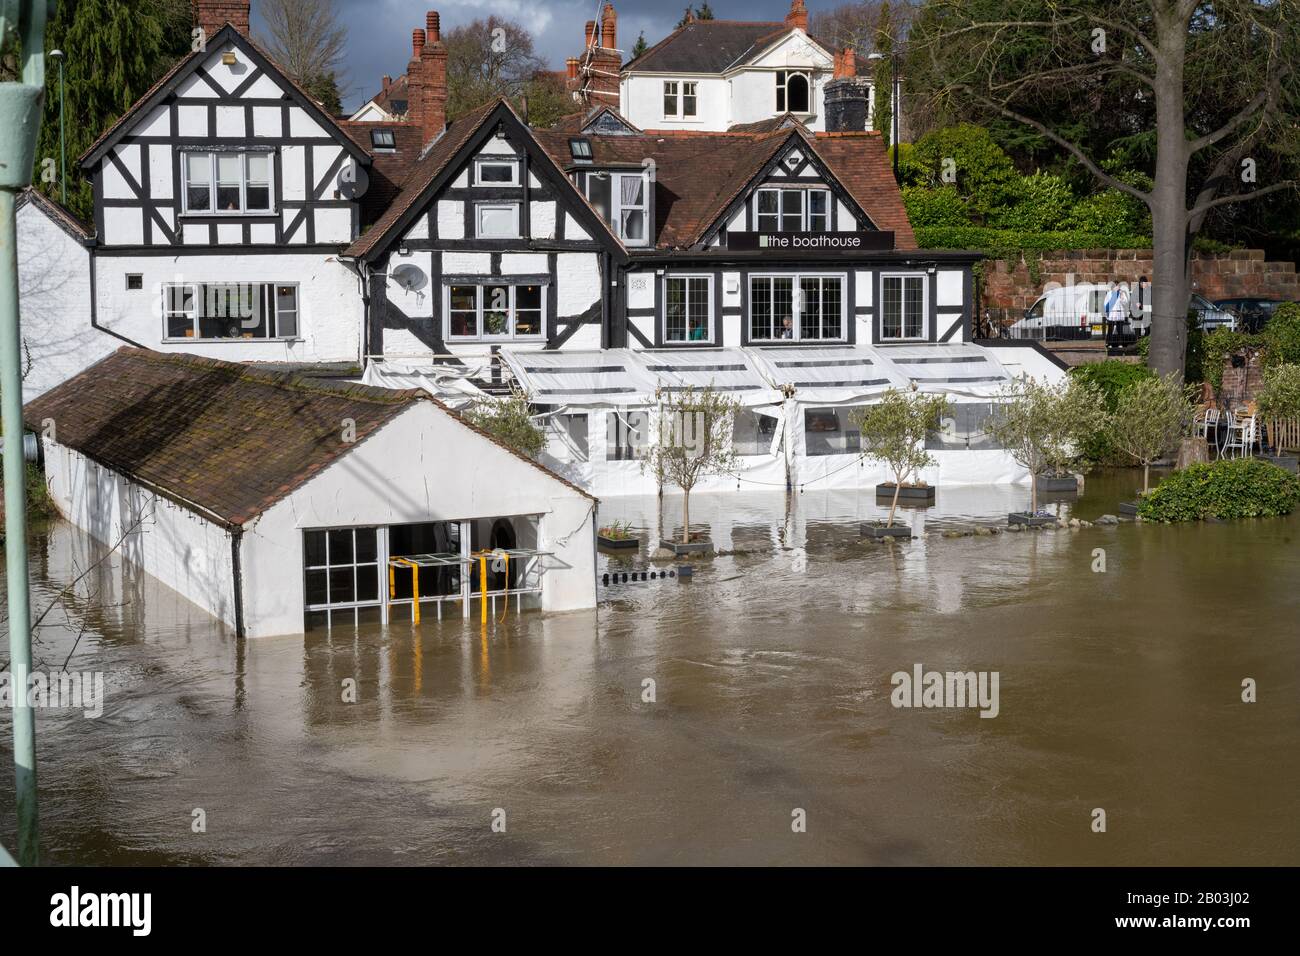 Inondation de la rivière Severn à Shrewsbury, Royaume-Uni. Inondation Du Boathouse Pub Banque D'Images